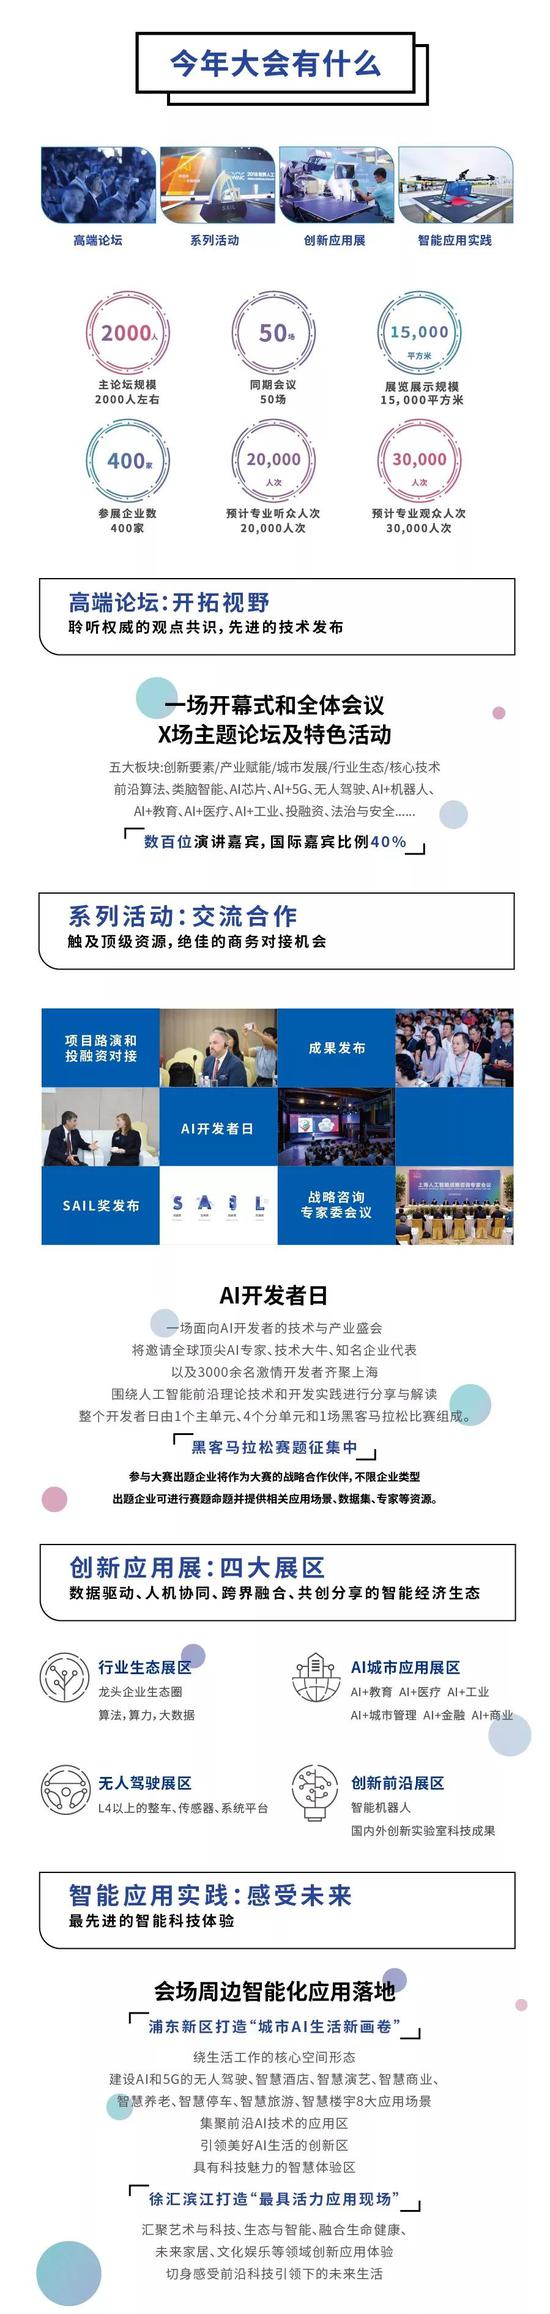 2019世界人工智能大会今天在沪举办 亮点一览